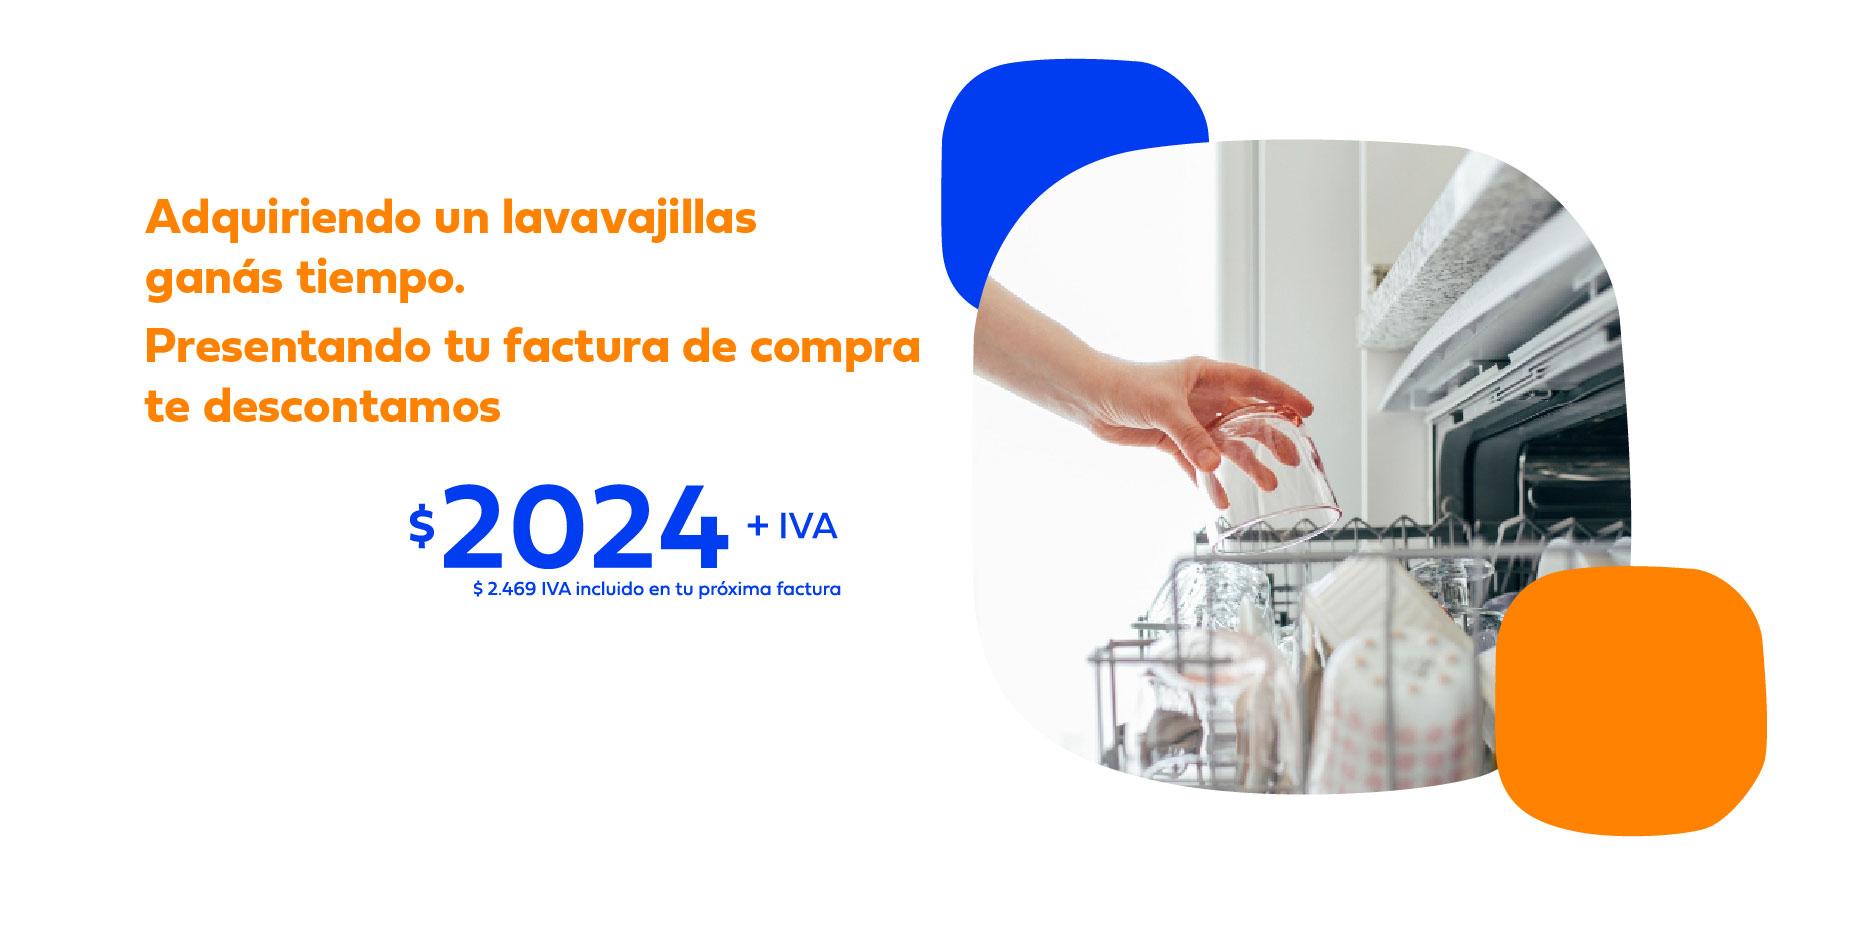 Texto en imagen: Adquiriendo un lavavajillas ganás tiempo. Presentando tu factura de compra te descontamos $2024 más iva. Foto de lavavjillas.